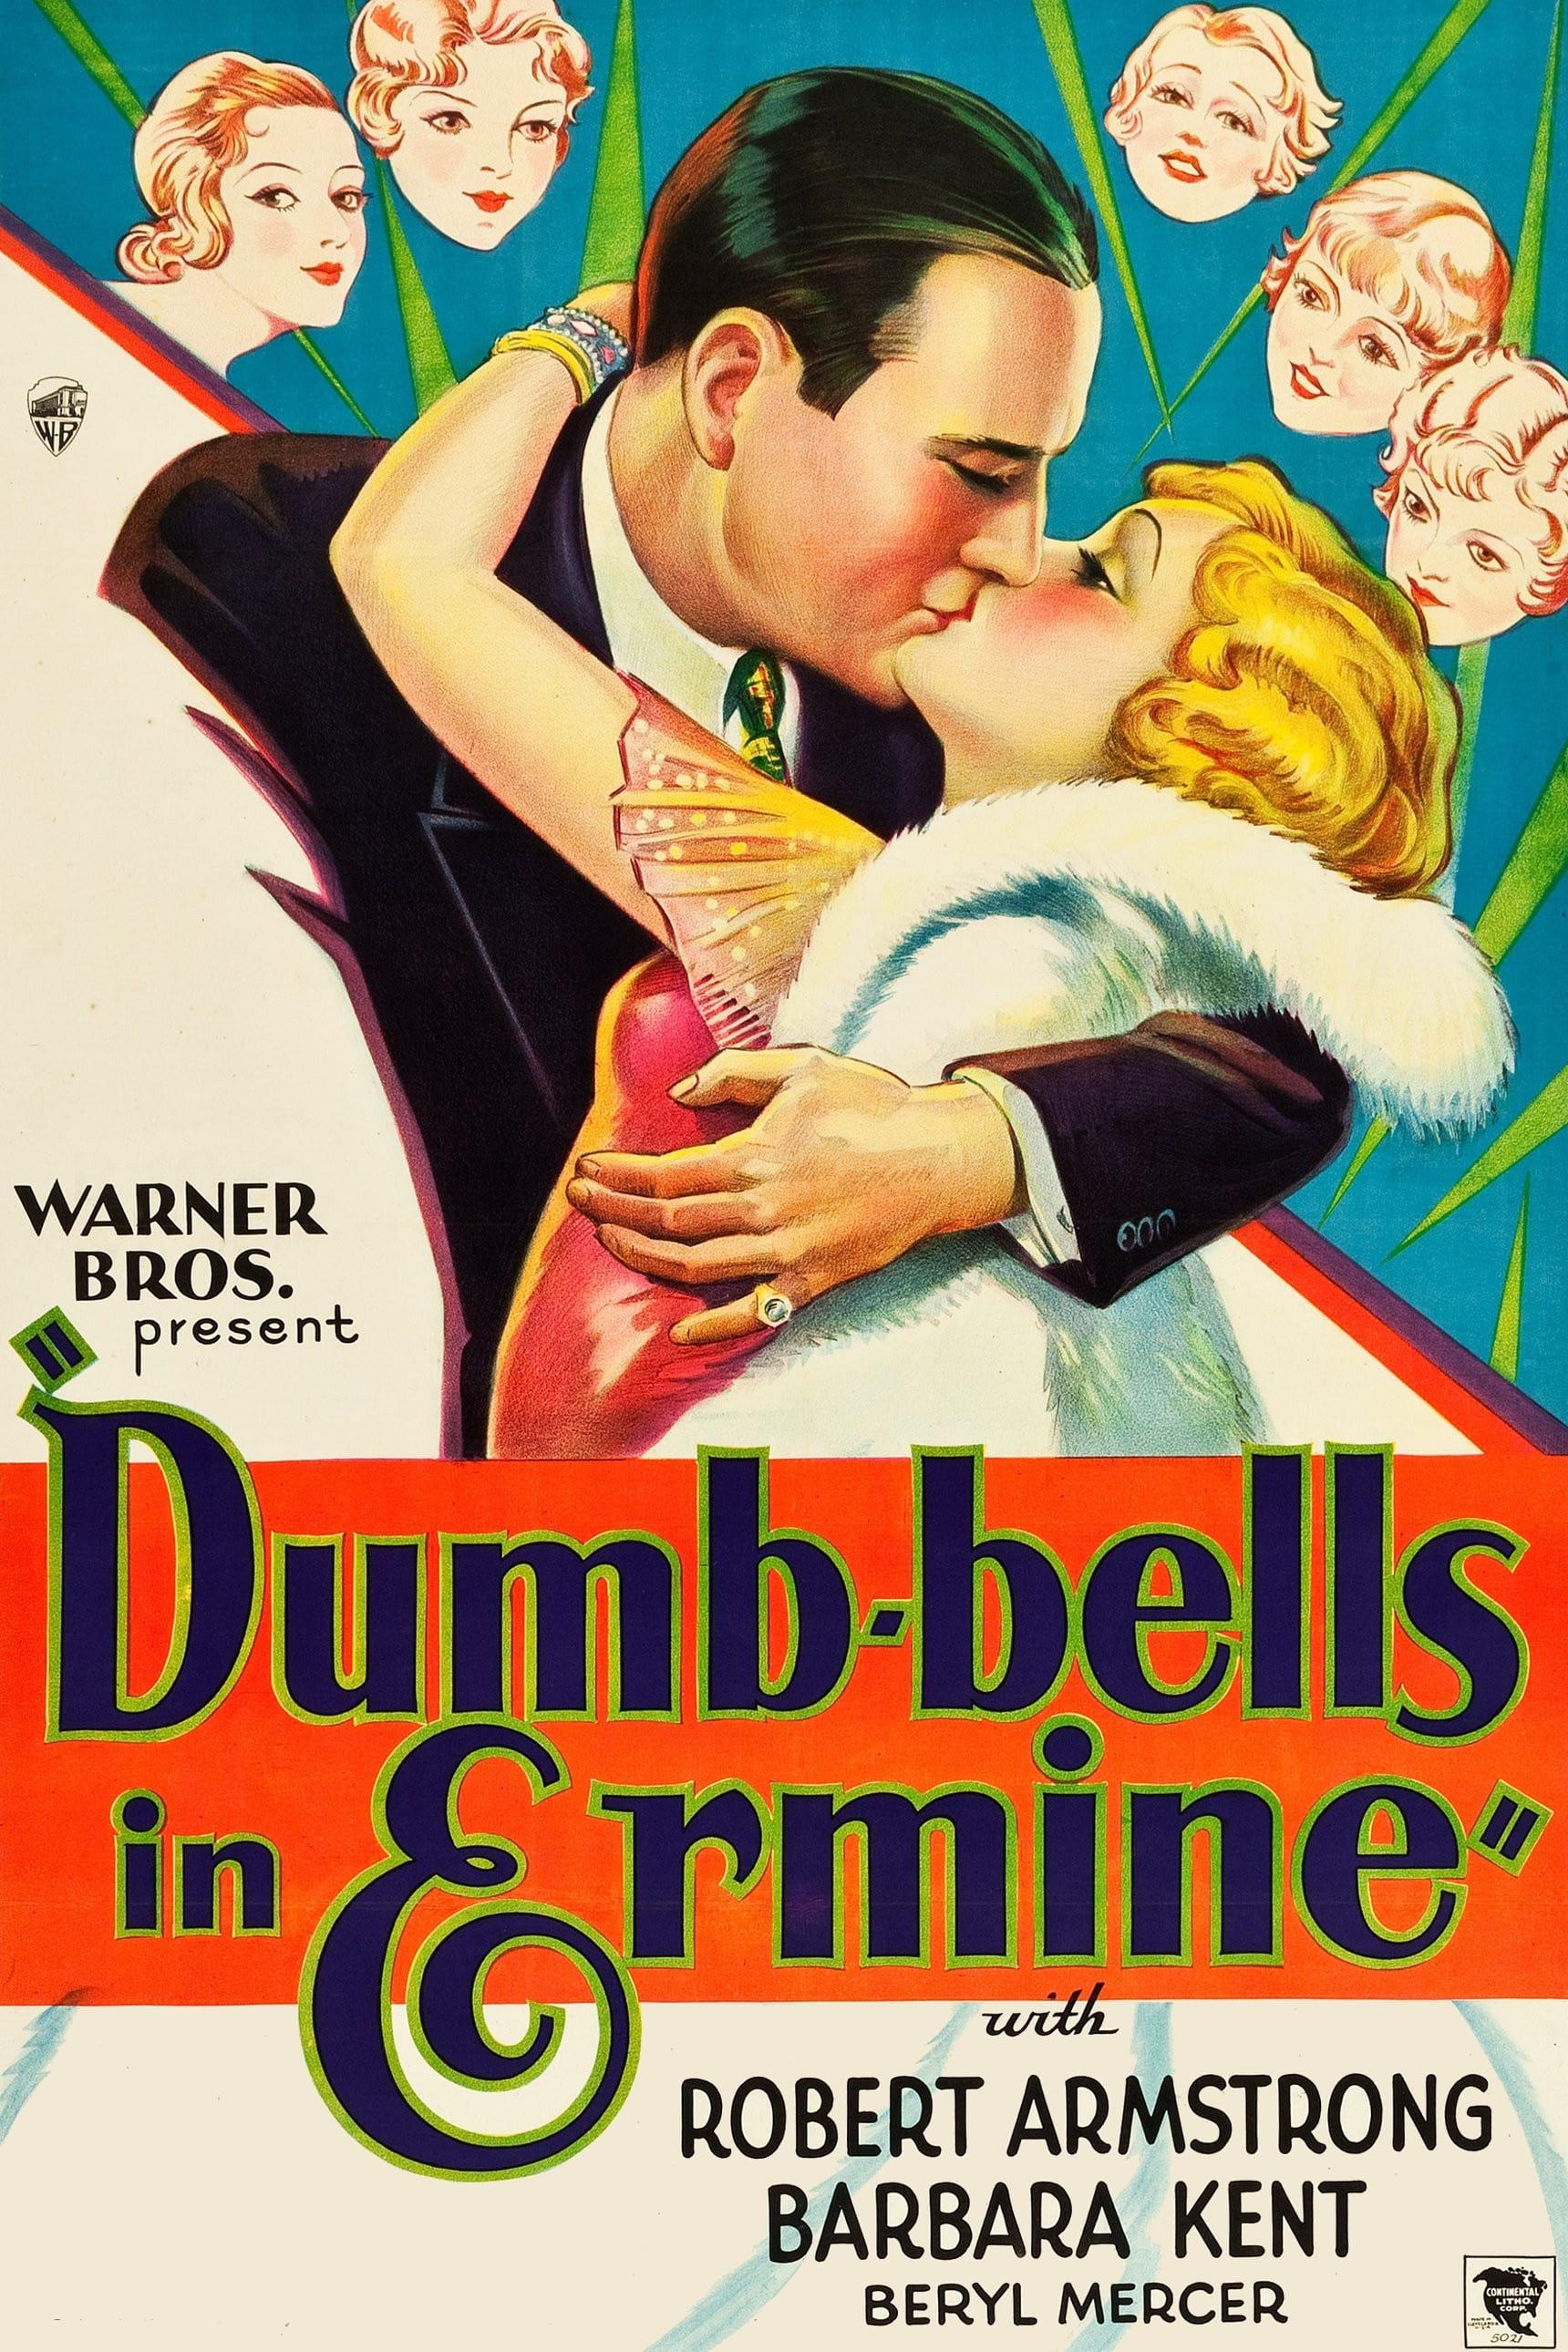 Dumb-bells in Ermine poster